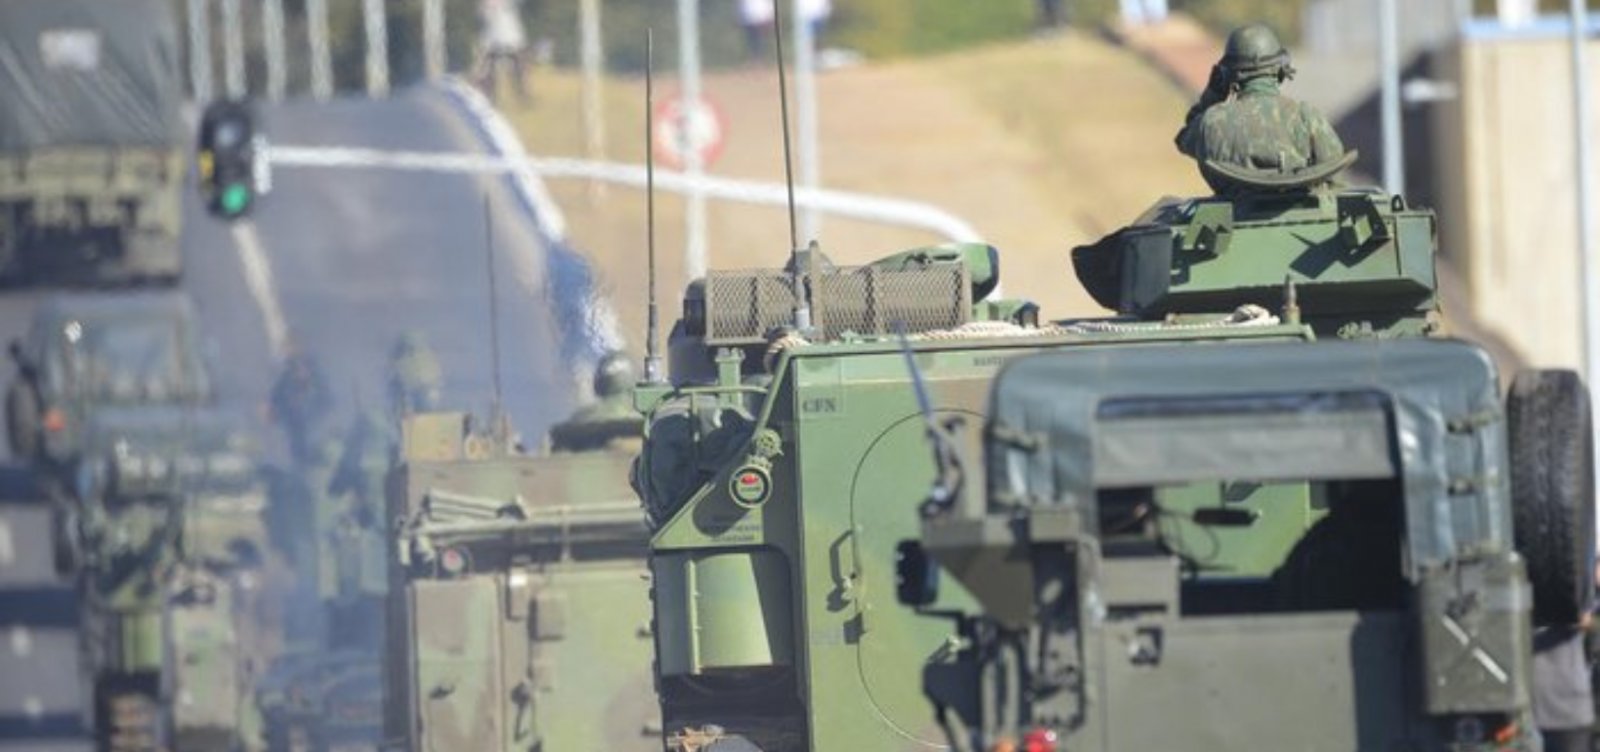 Exército brasileiro envia 20 tanques para Roraima em meio a tensão entre Venezuela e Guiana